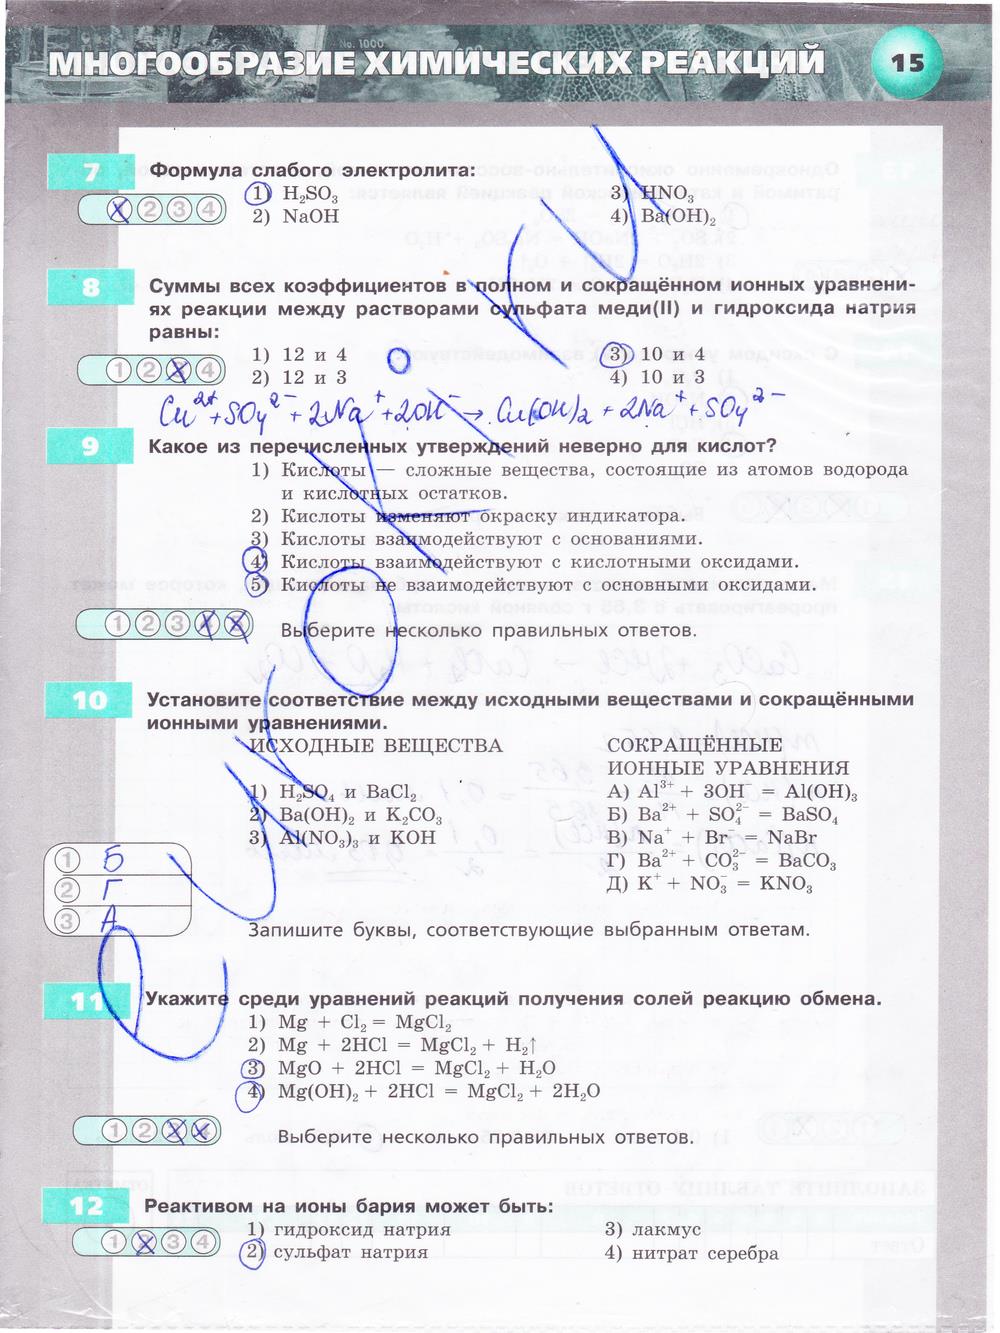 гдз 9 класс тетрадь-экзаменатор страница 15 химия Бобылева, Бирюлина